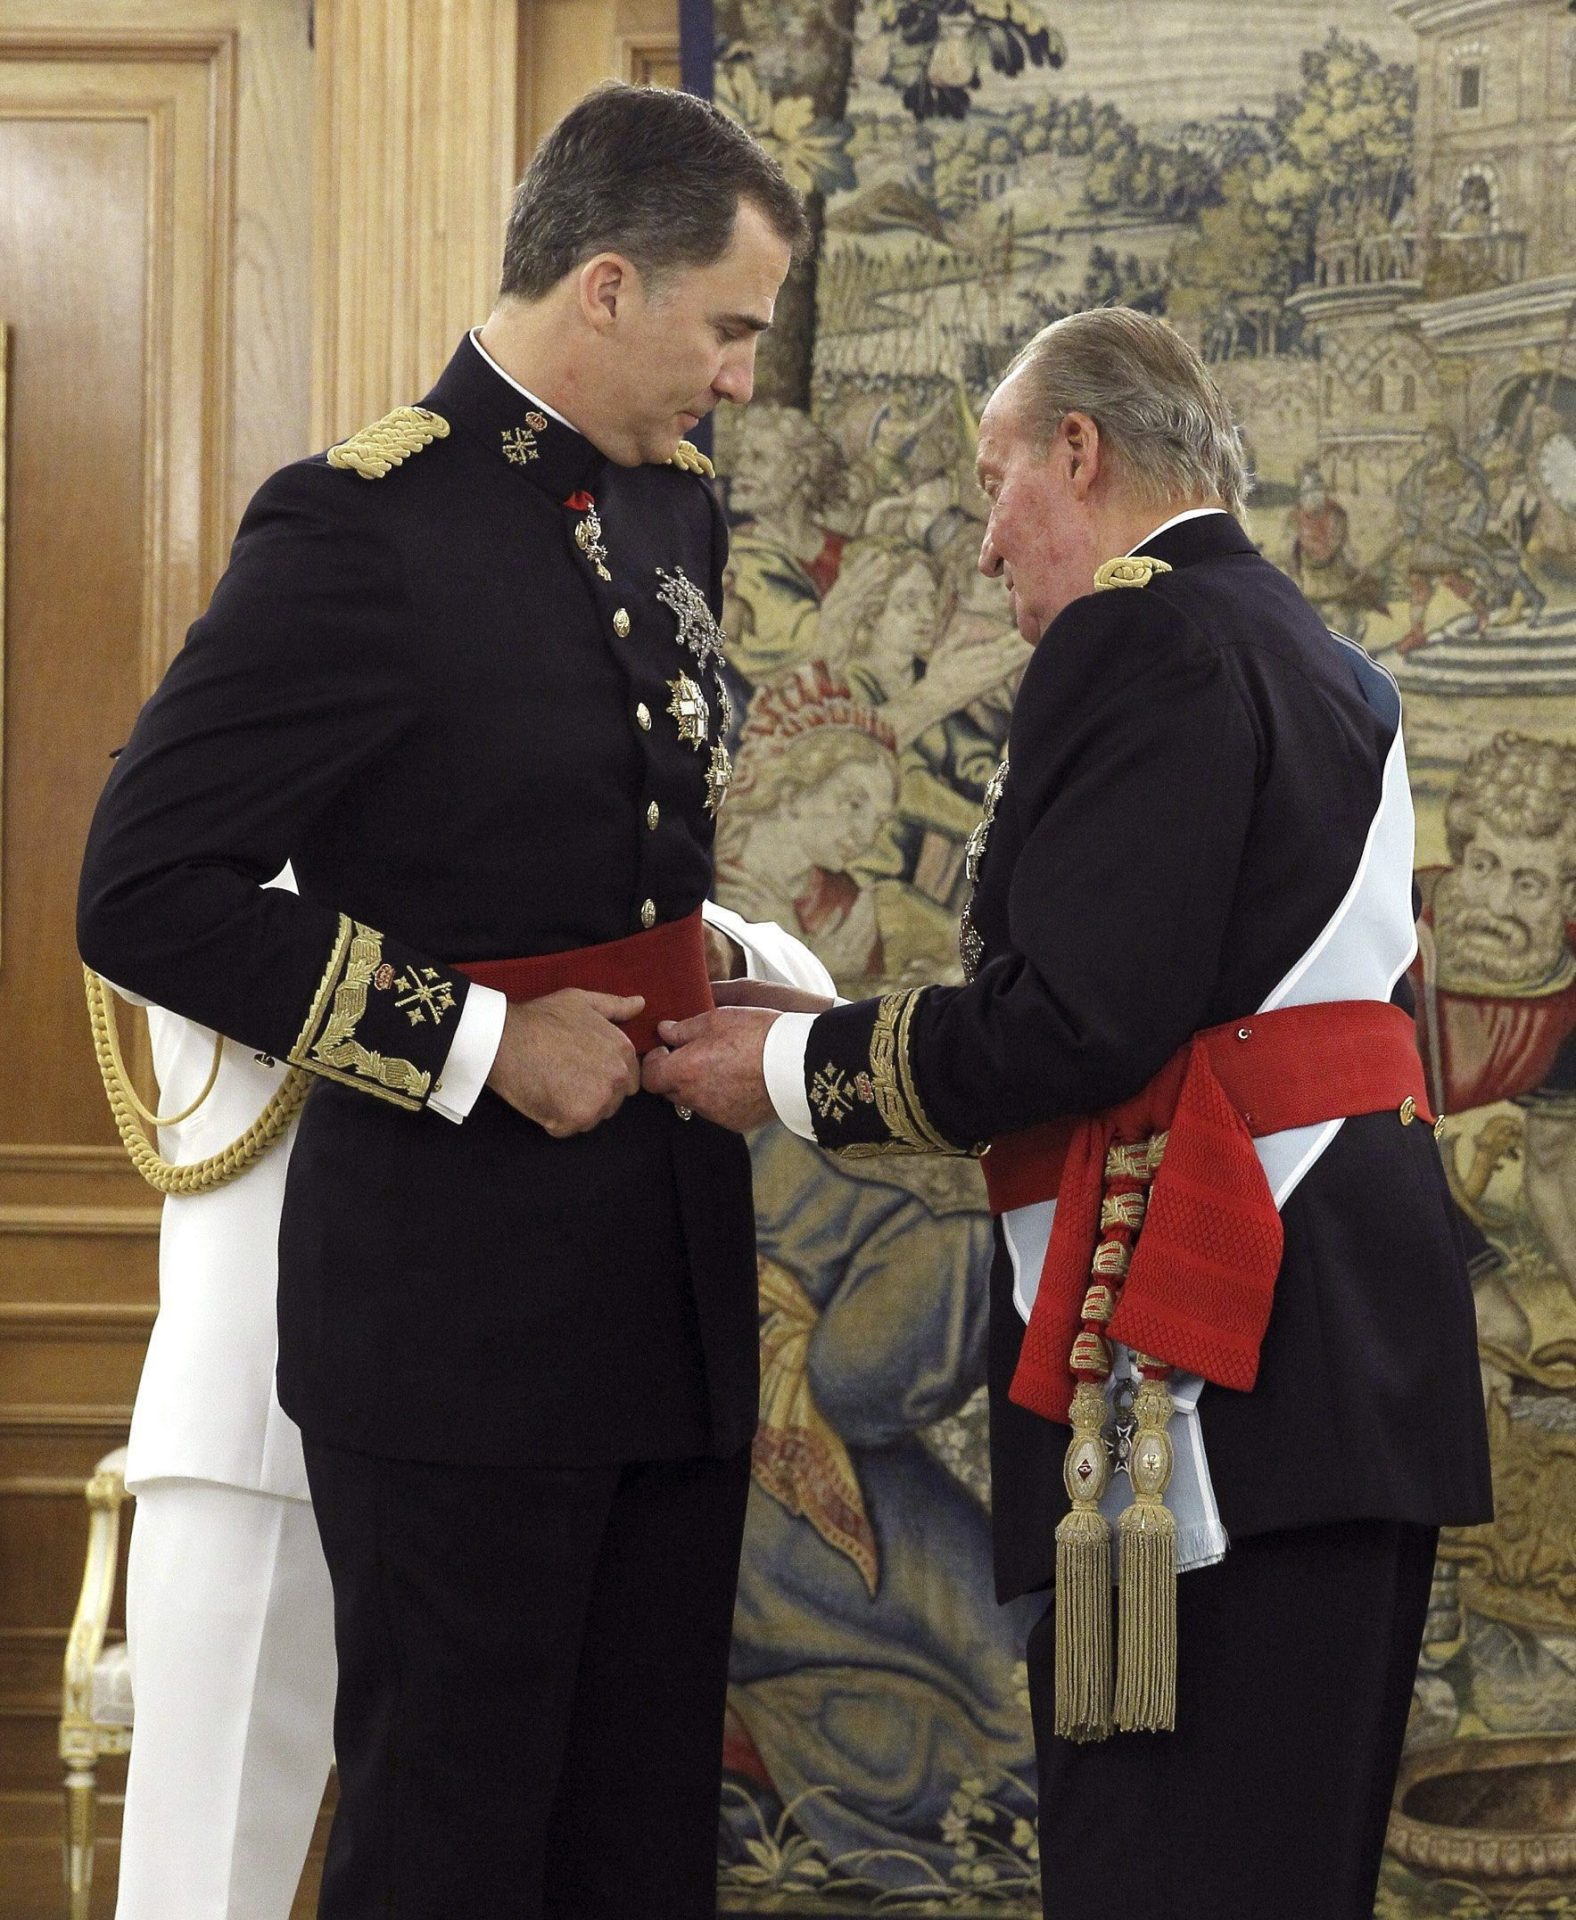 Juan Carlos passa o comando geral dos exércitos ao filho